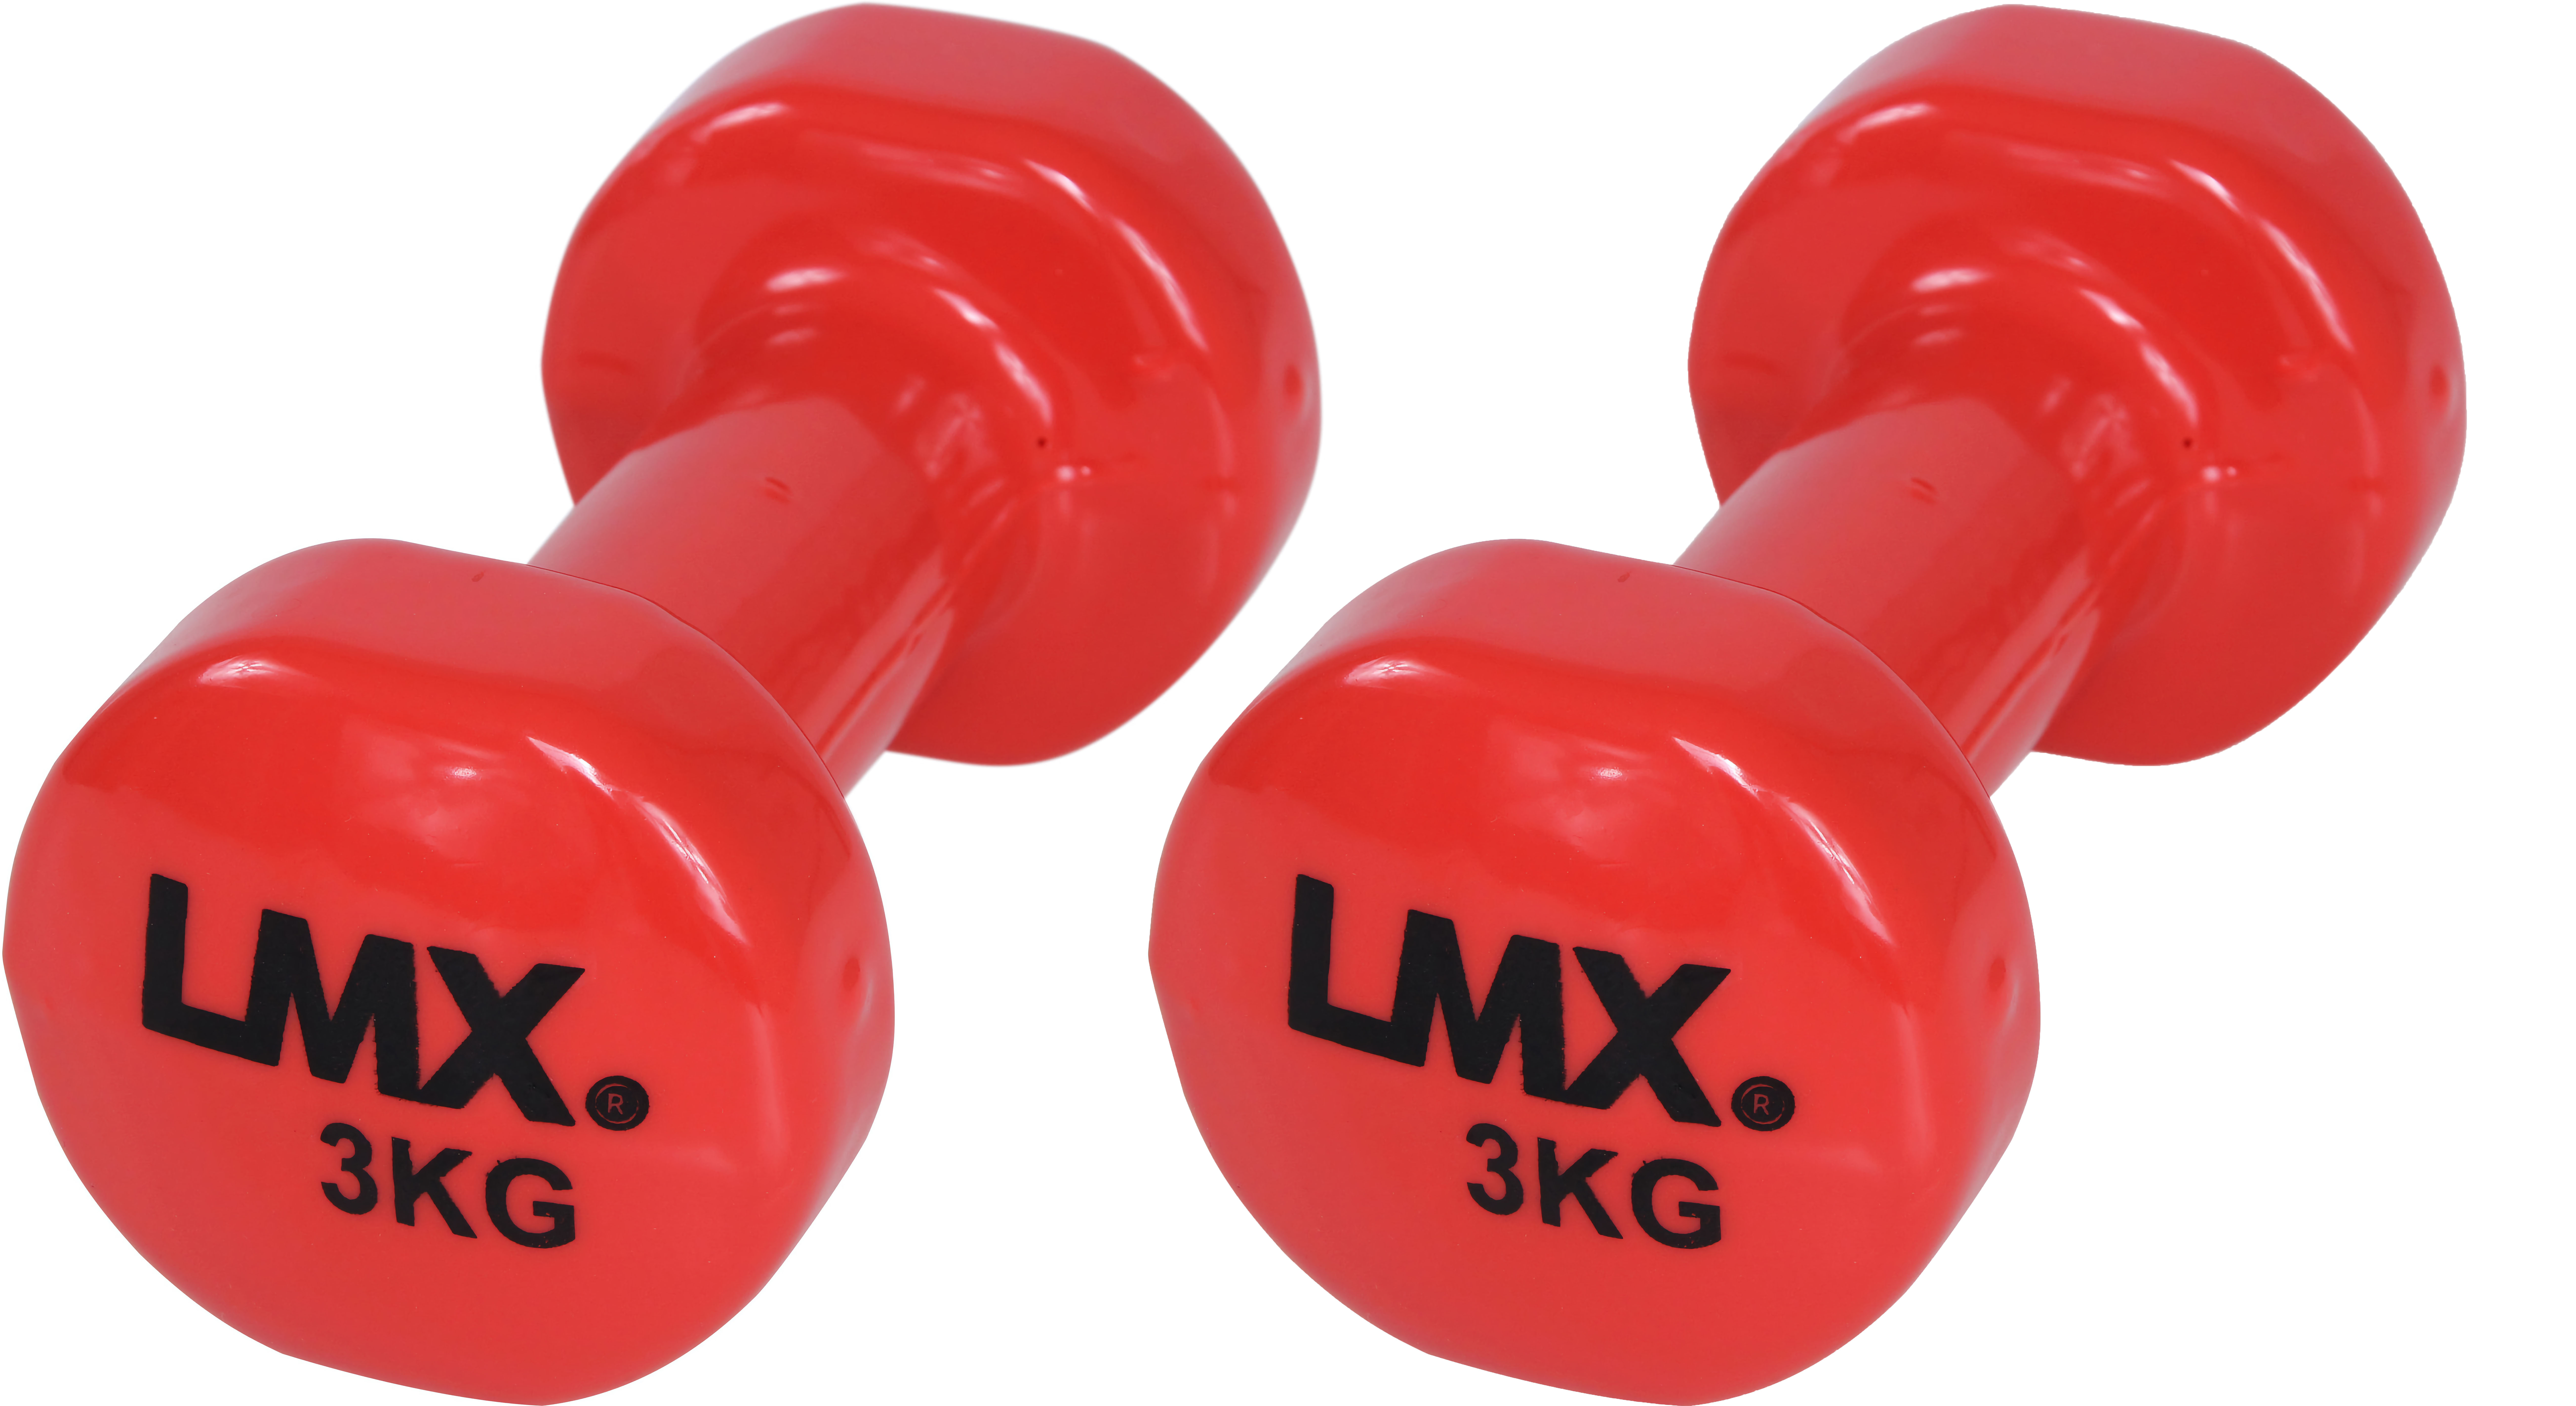 Brug LMX. Vinyl Håndvægtsæt 3 kg Red til en forbedret oplevelse